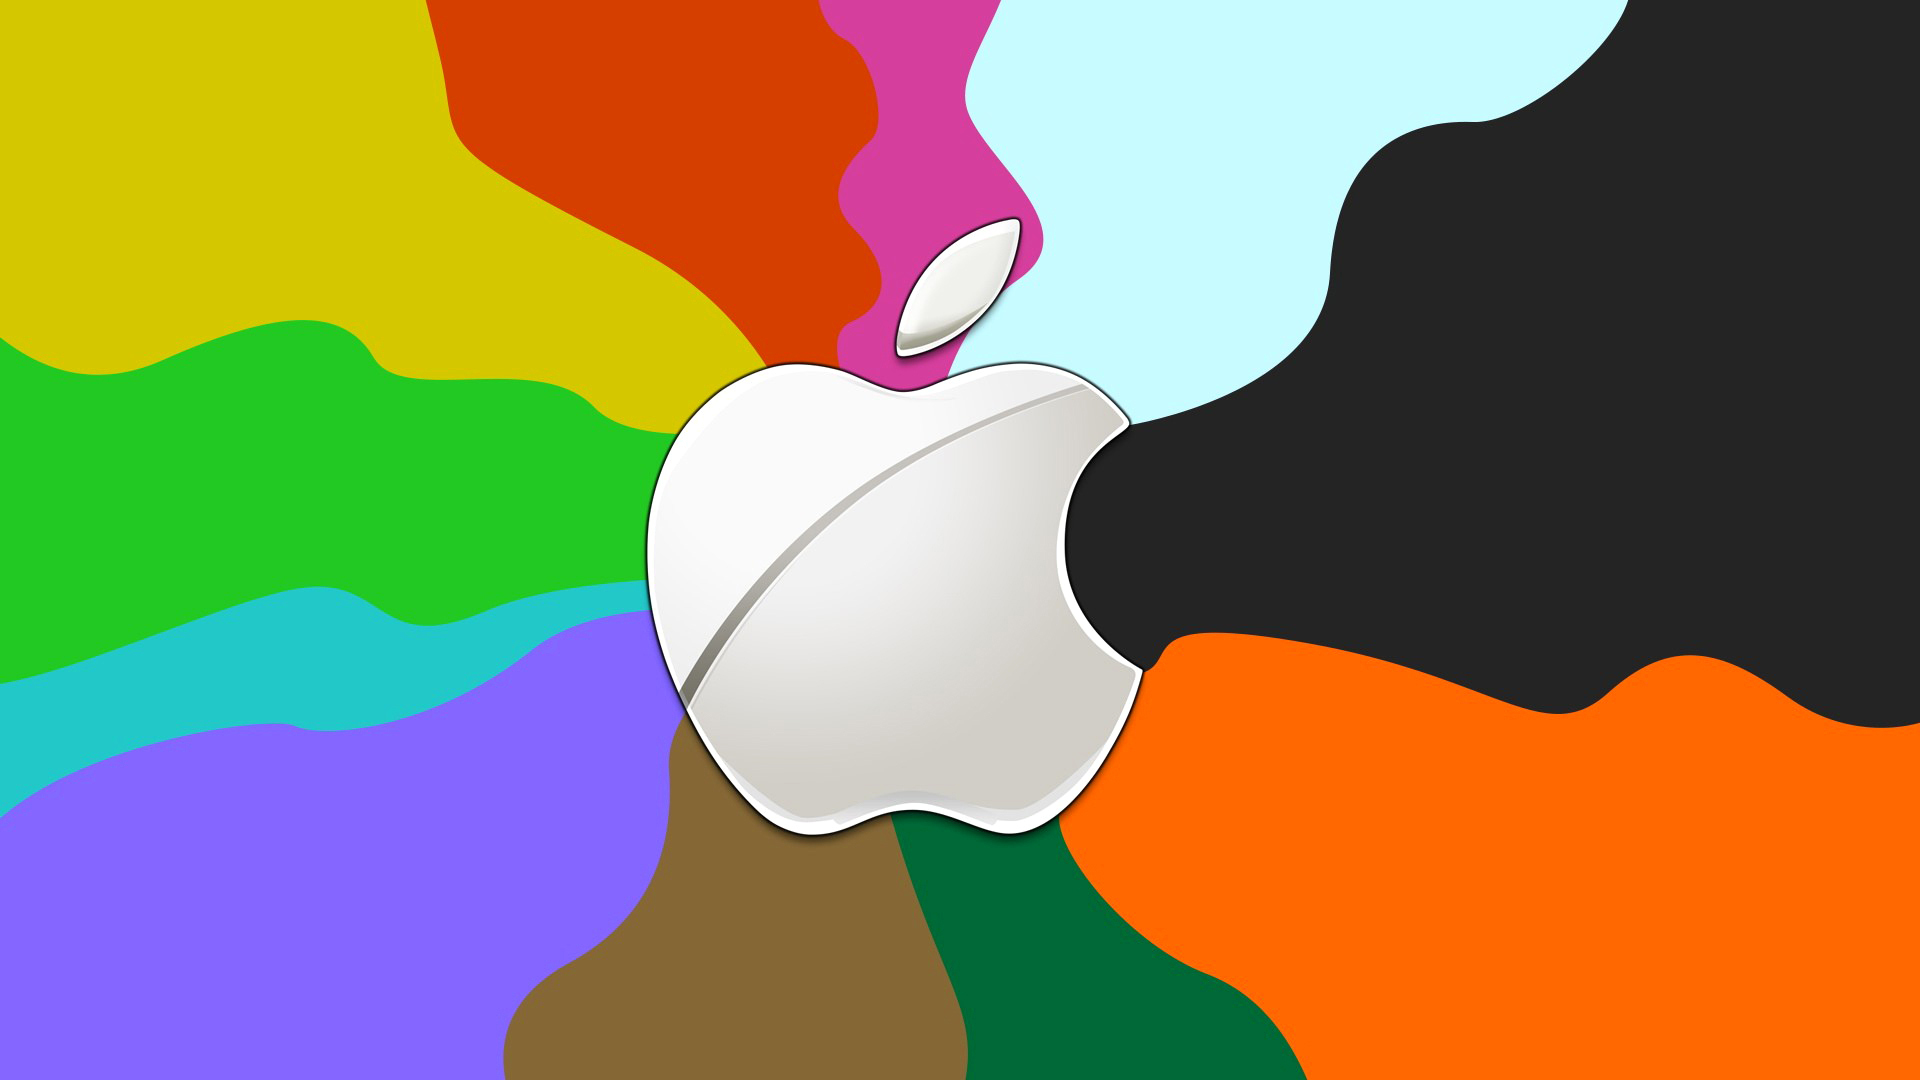 Скачать обои бесплатно Цвета, Красочный, Технологии, Яблоко, Apple Inc картинка на рабочий стол ПК